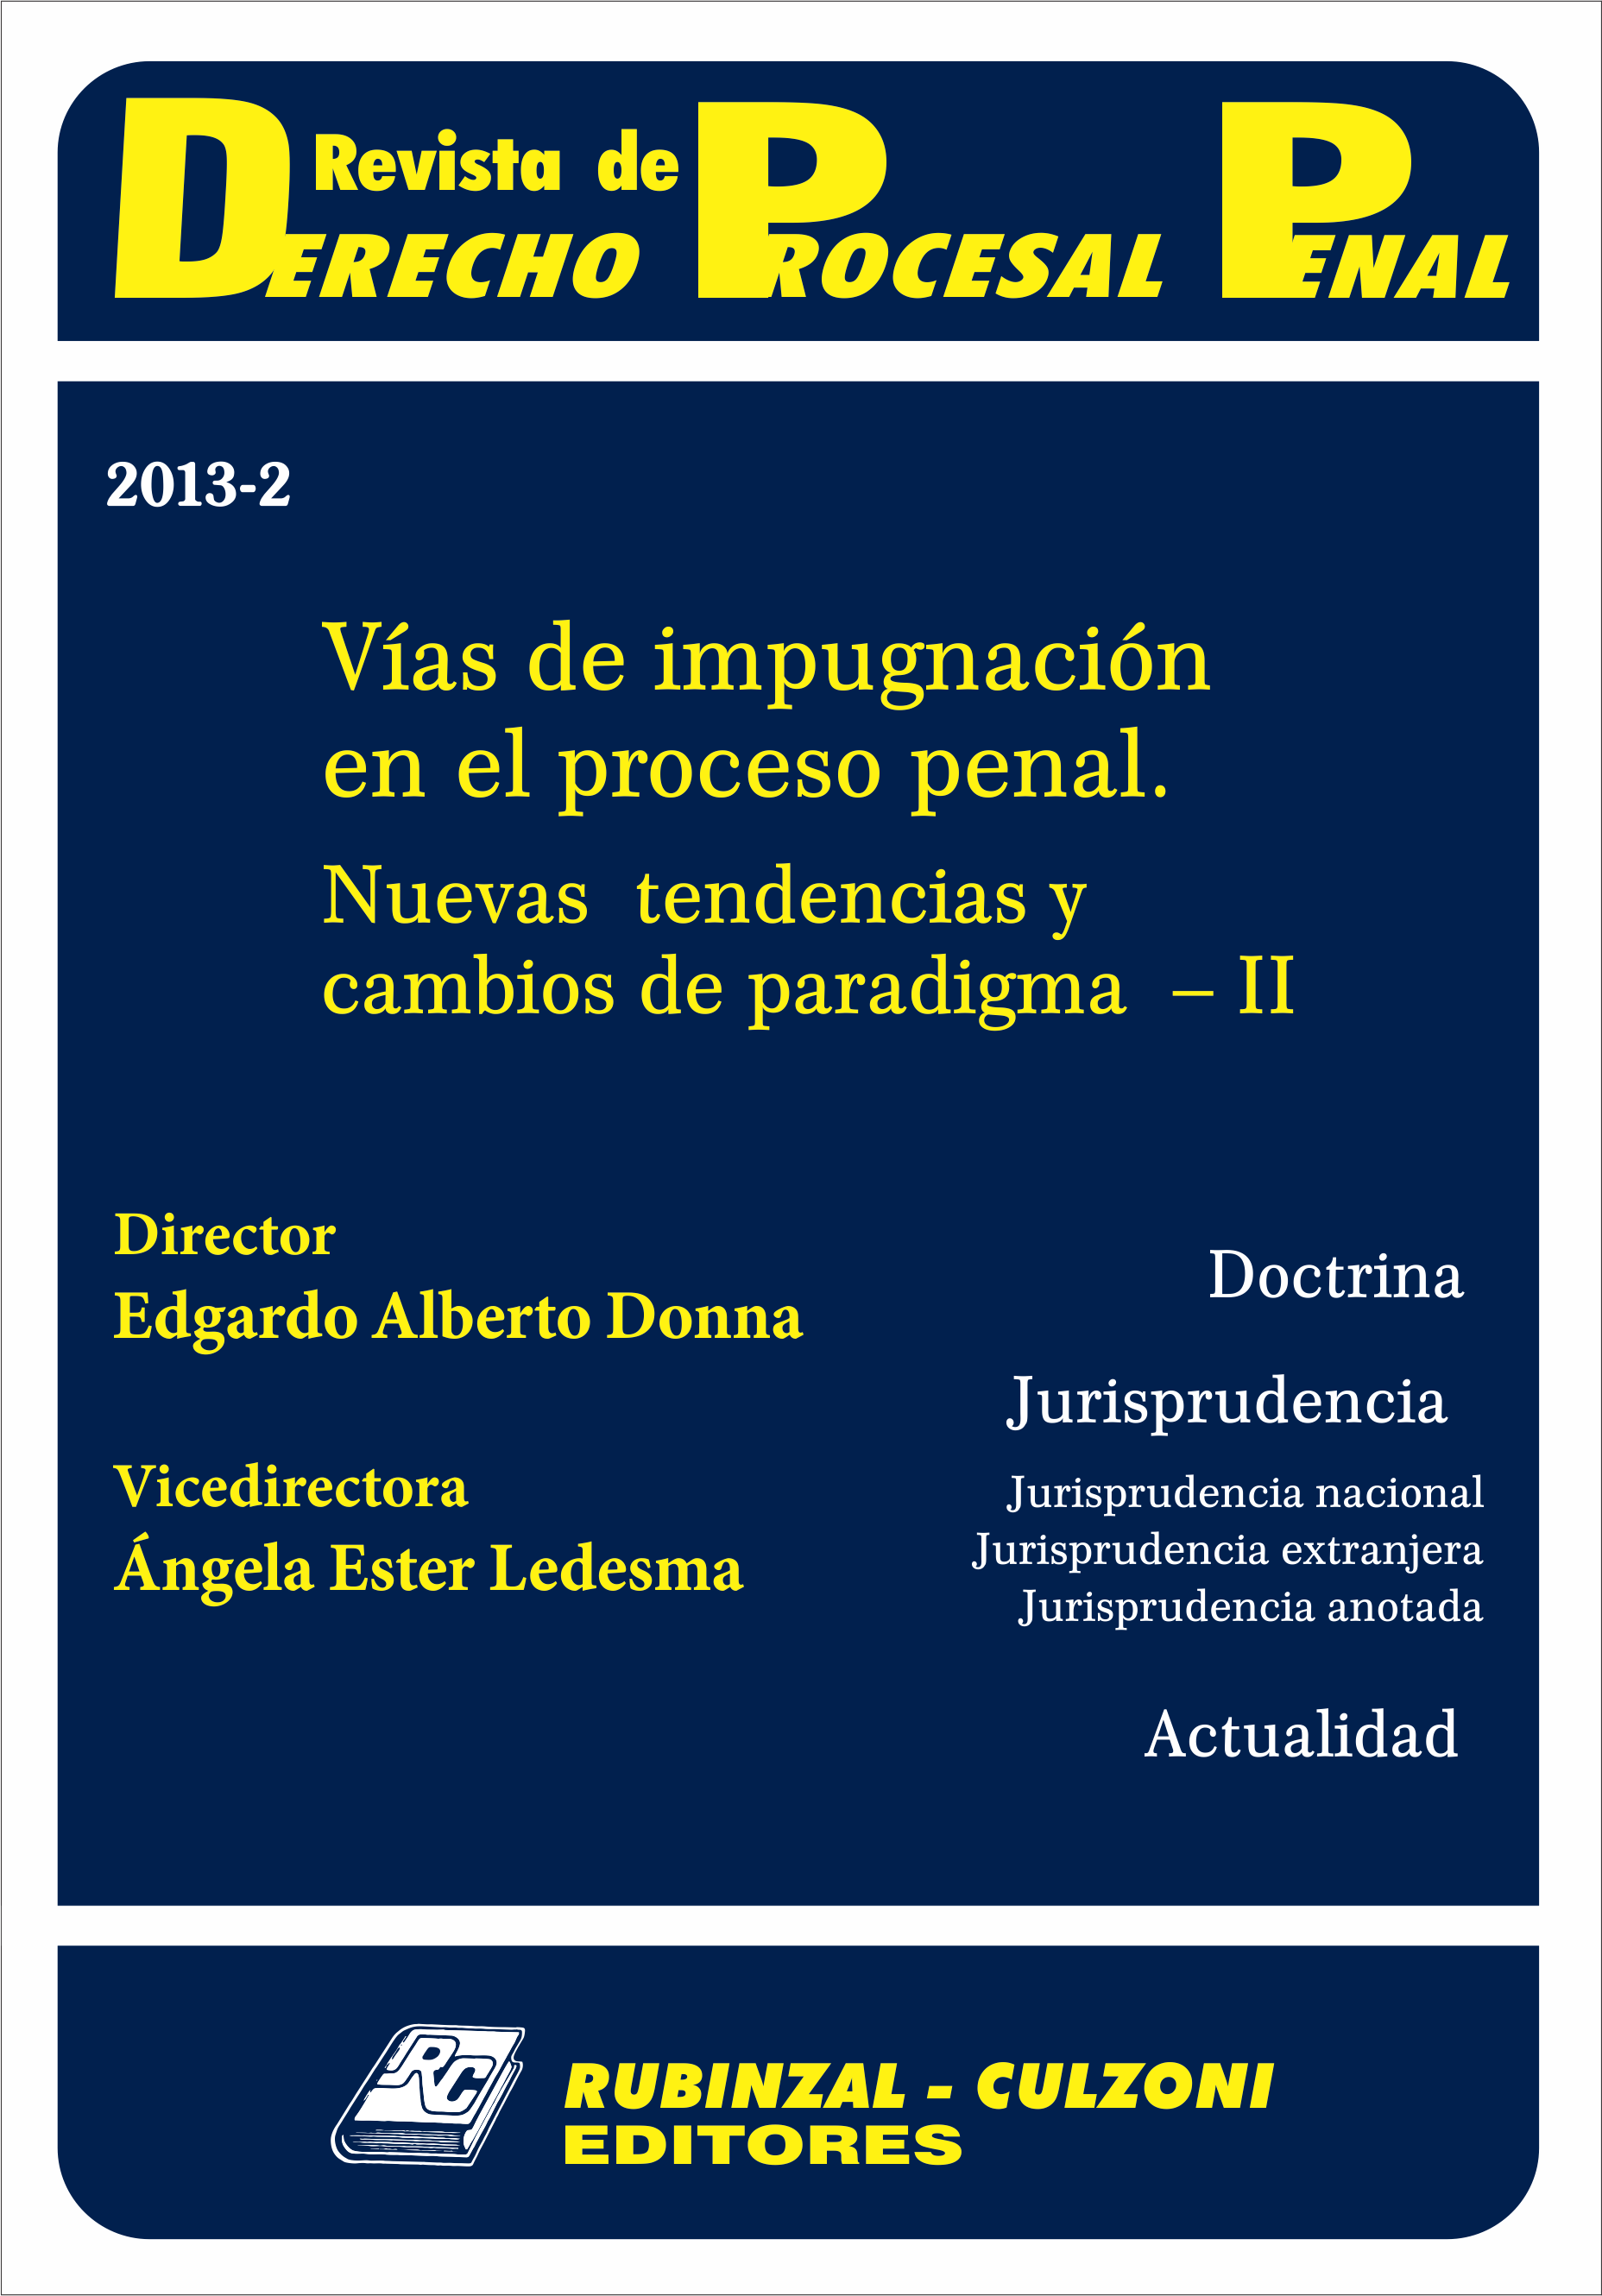 Revista de Derecho Procesal Penal - Vías de impugnación en el proceso penal. Nuevas tendencias y cambios de paradigma - II.